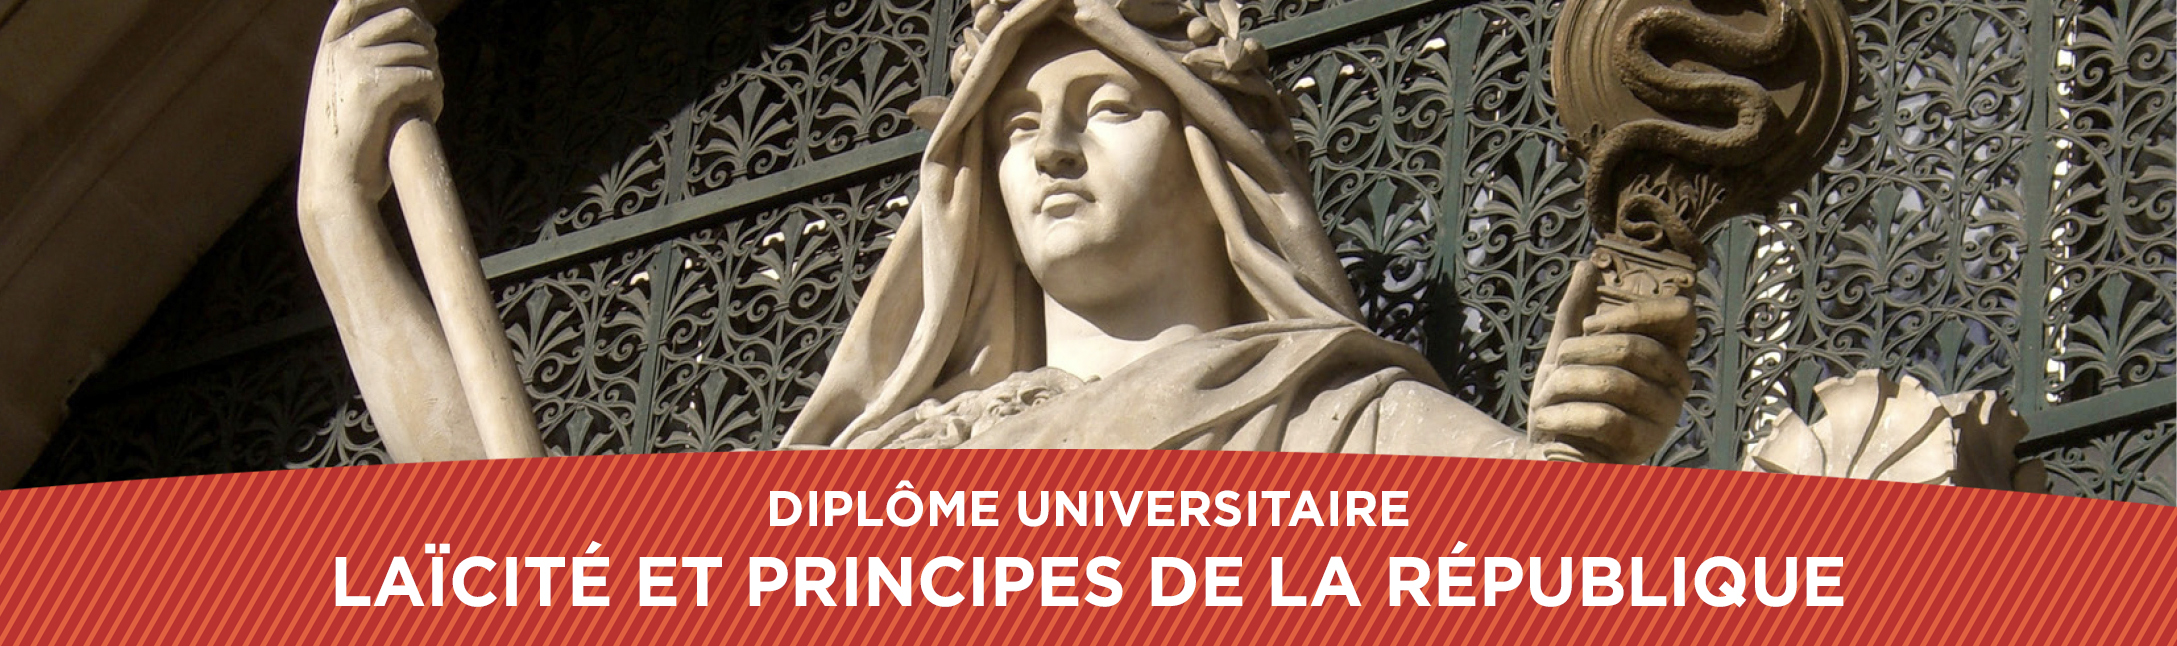 bandeau statue du Diplôme universitaire Laïcité et principes de la République de la Faculté de droit CY